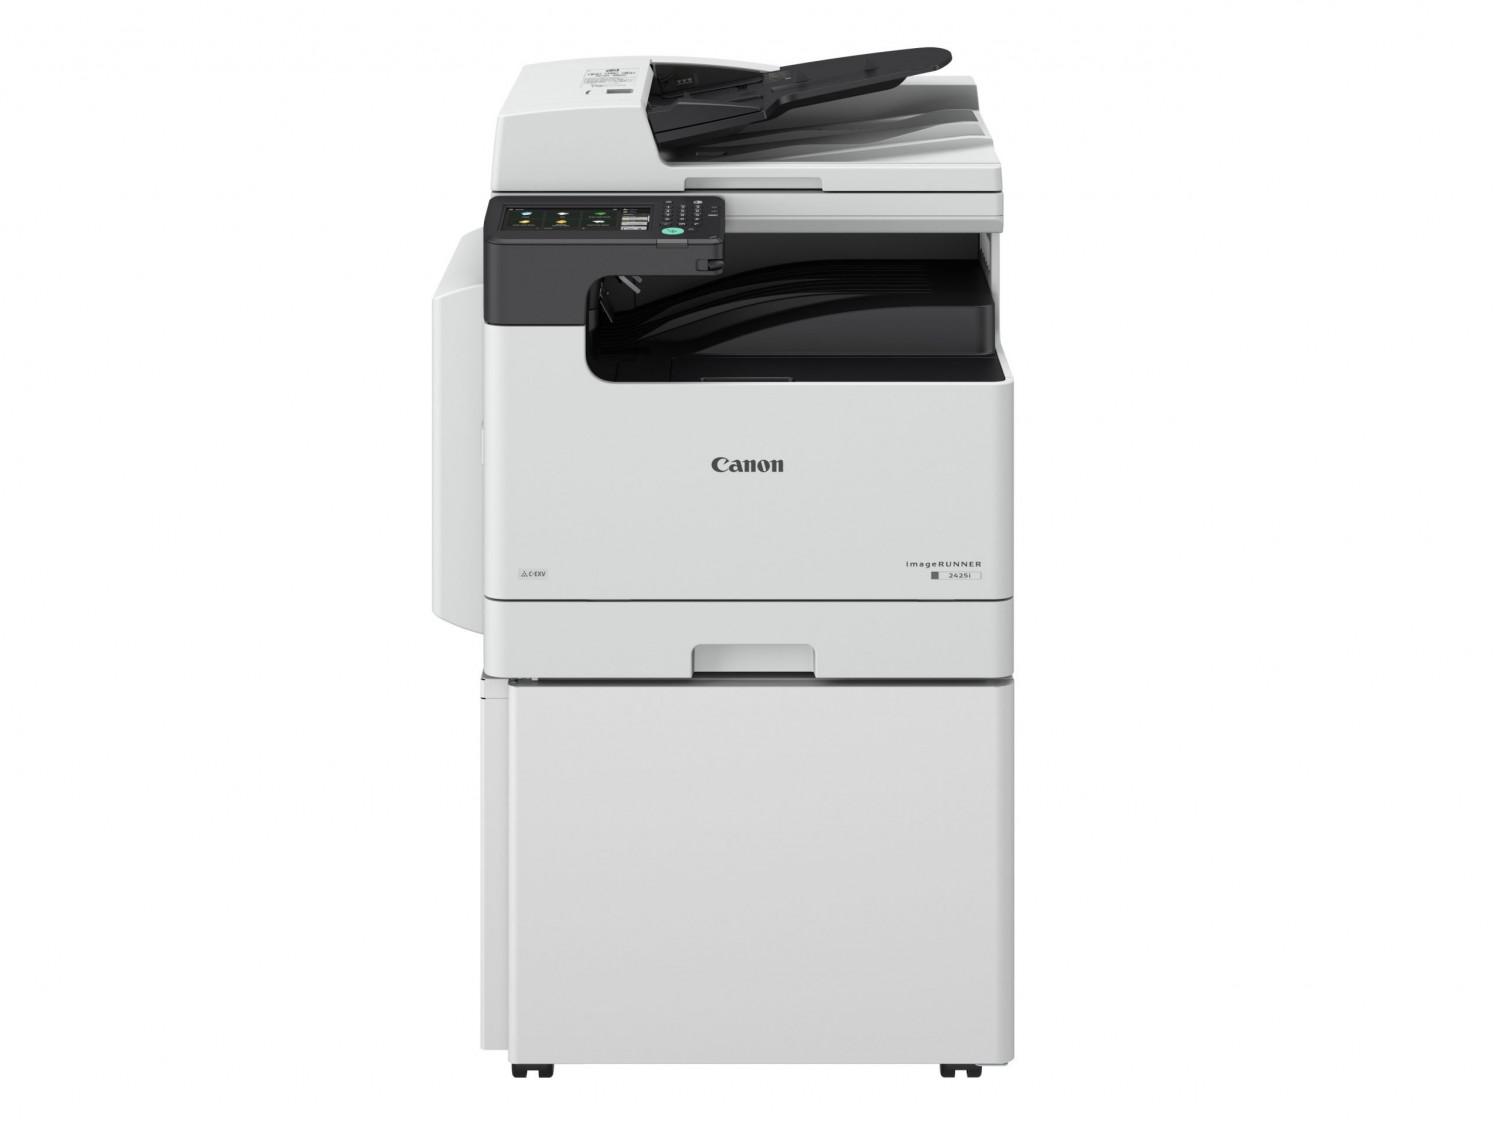 Canon imprimante scanner photocopieuse couleur et noir 